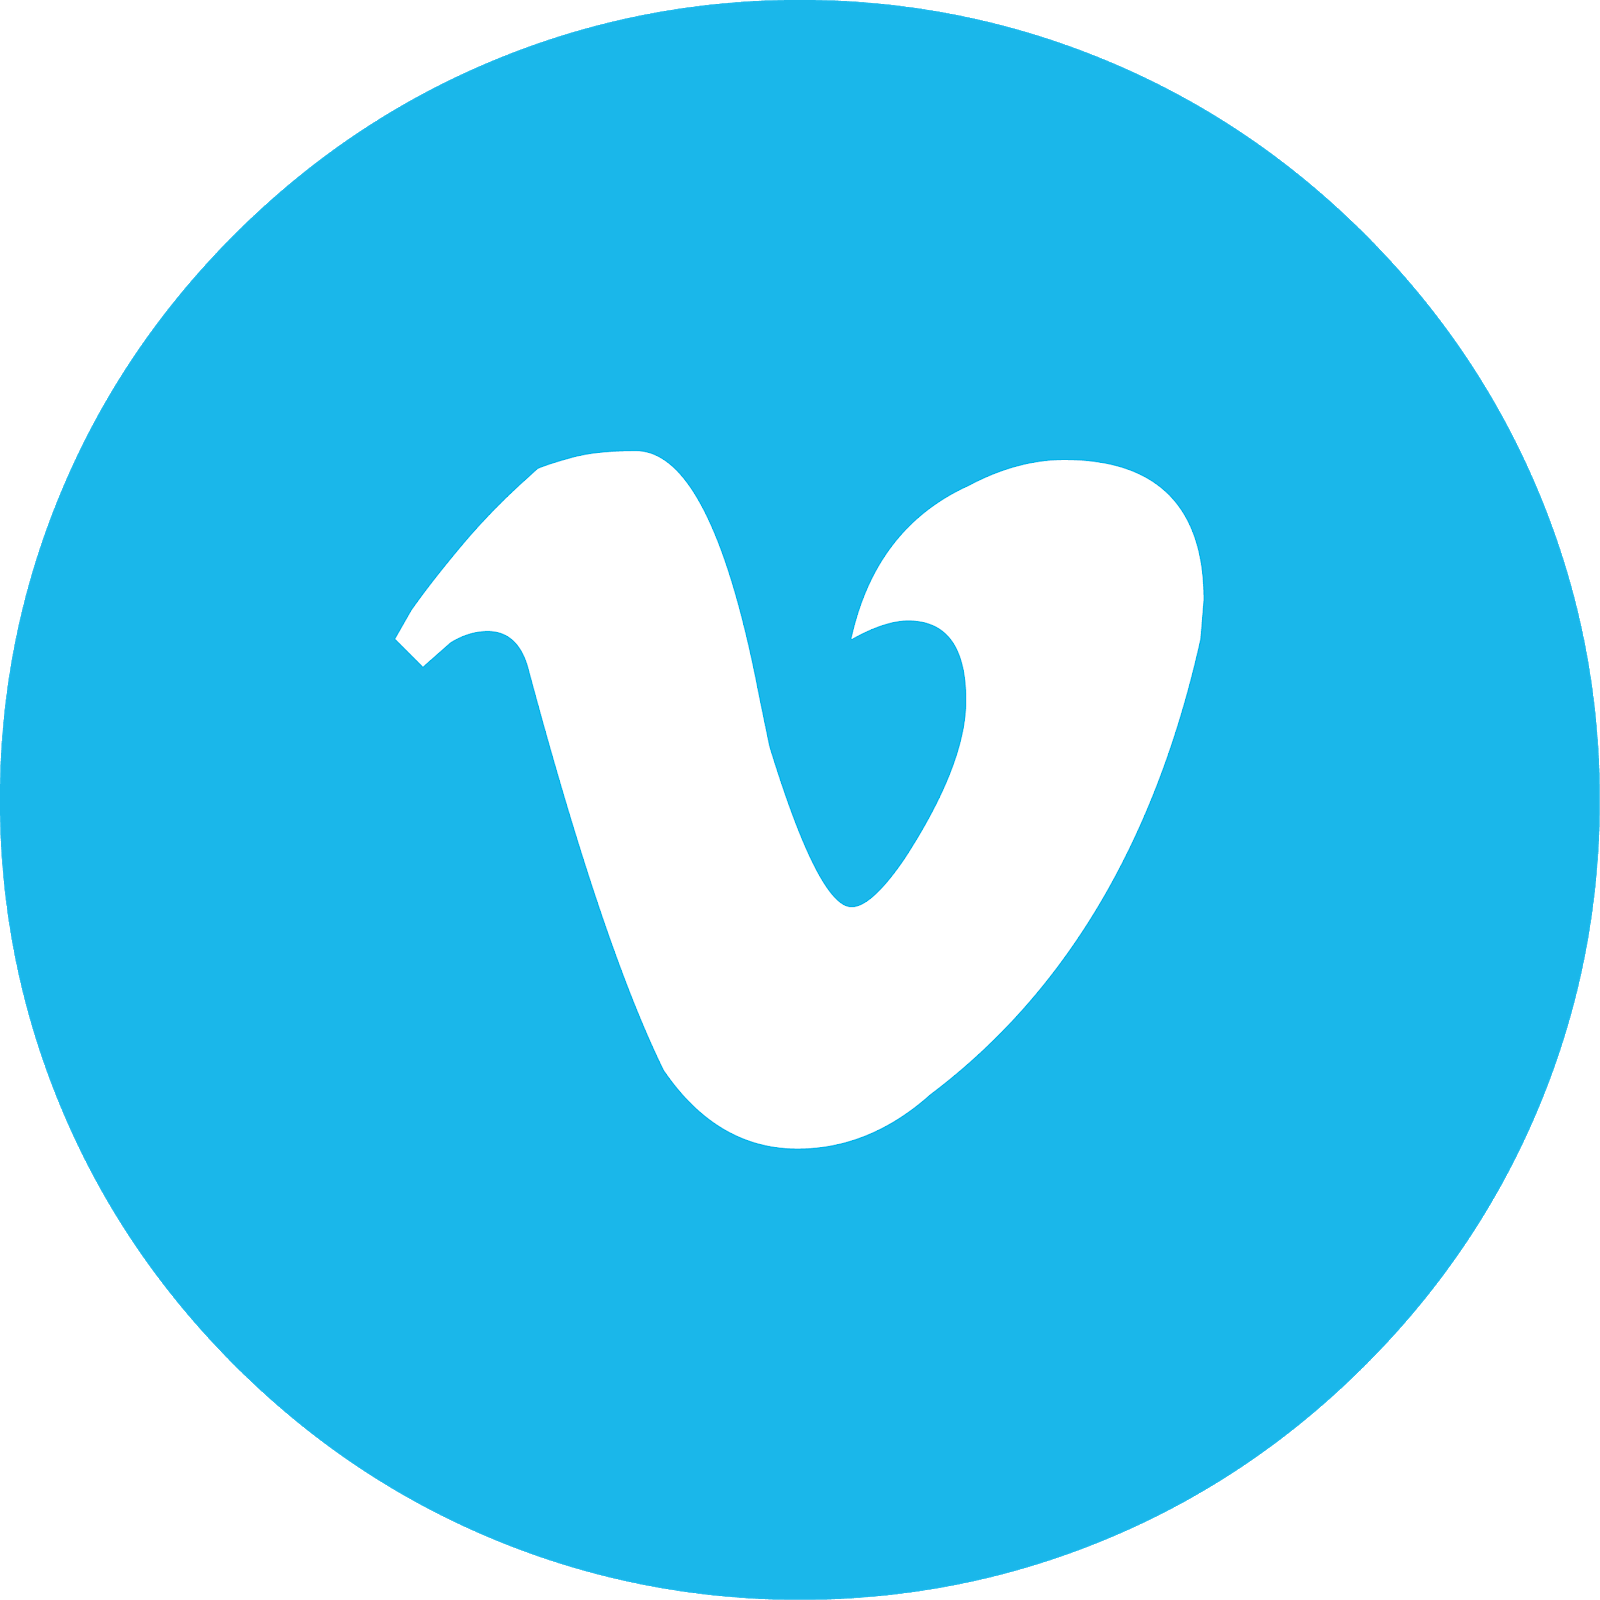 vimeo logo black